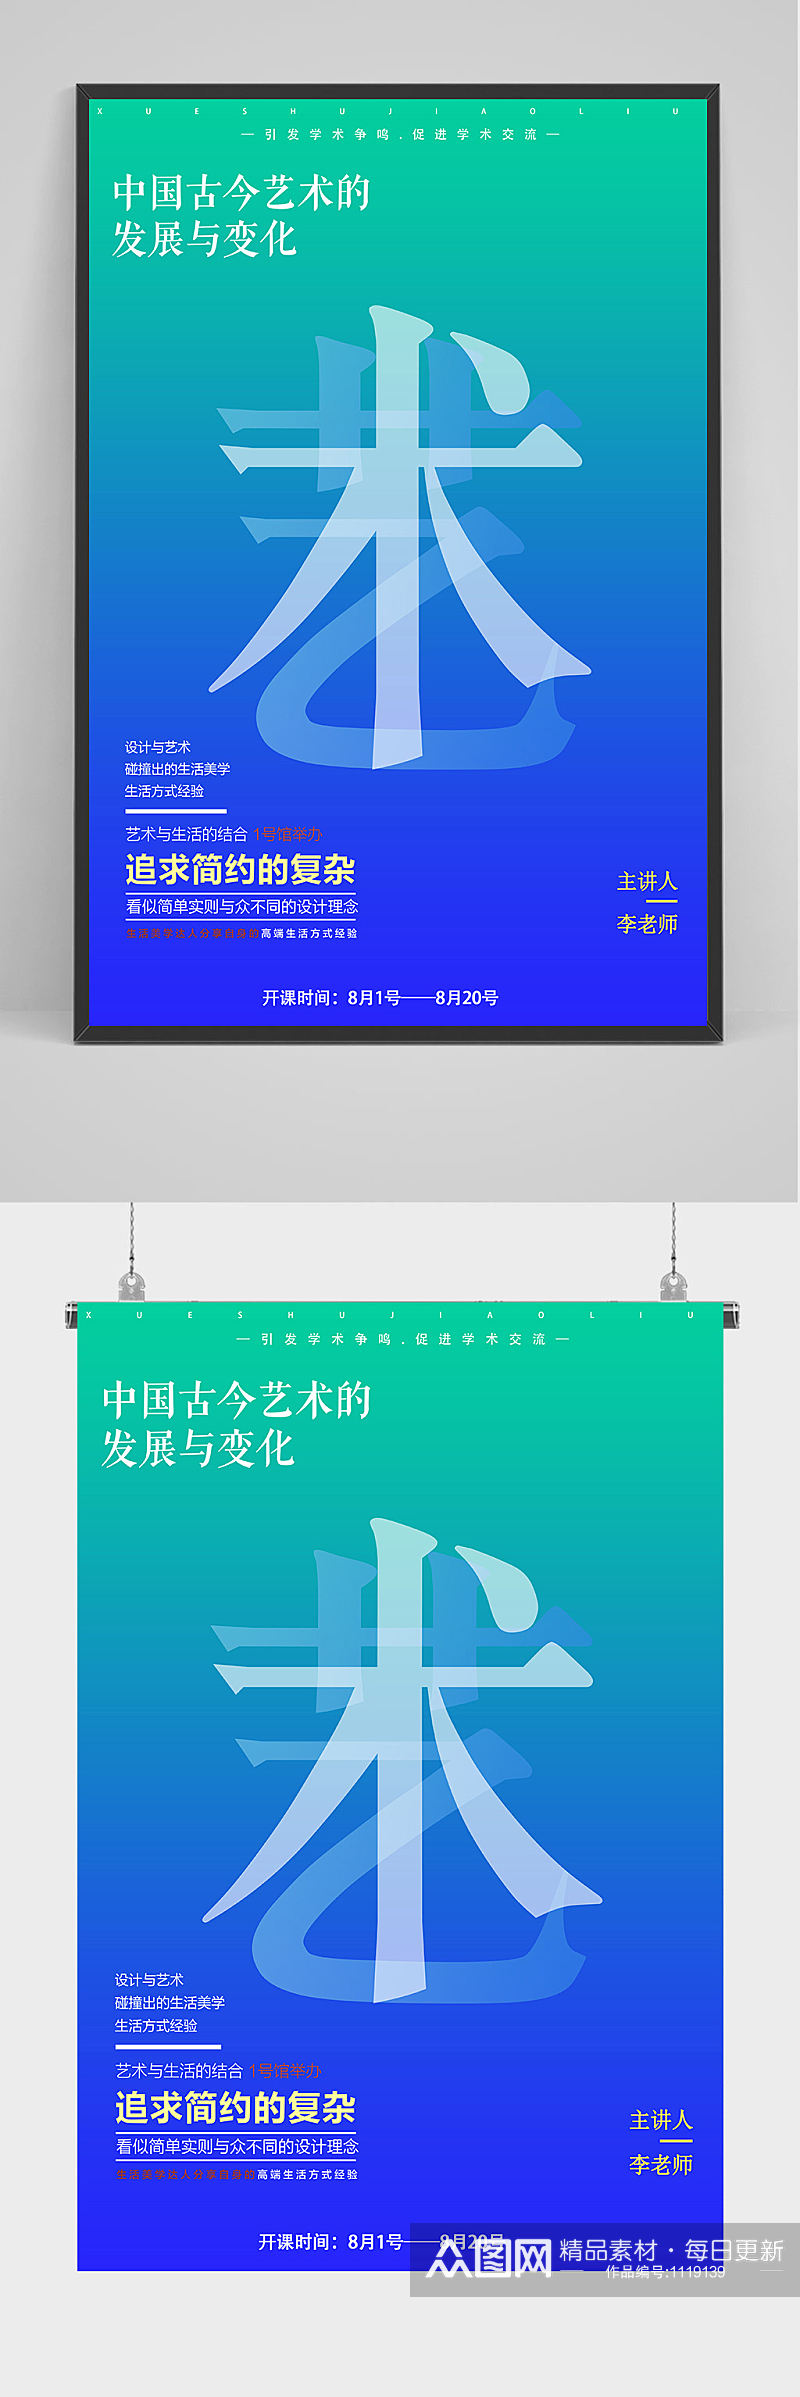 中国艺术展海报设计素材